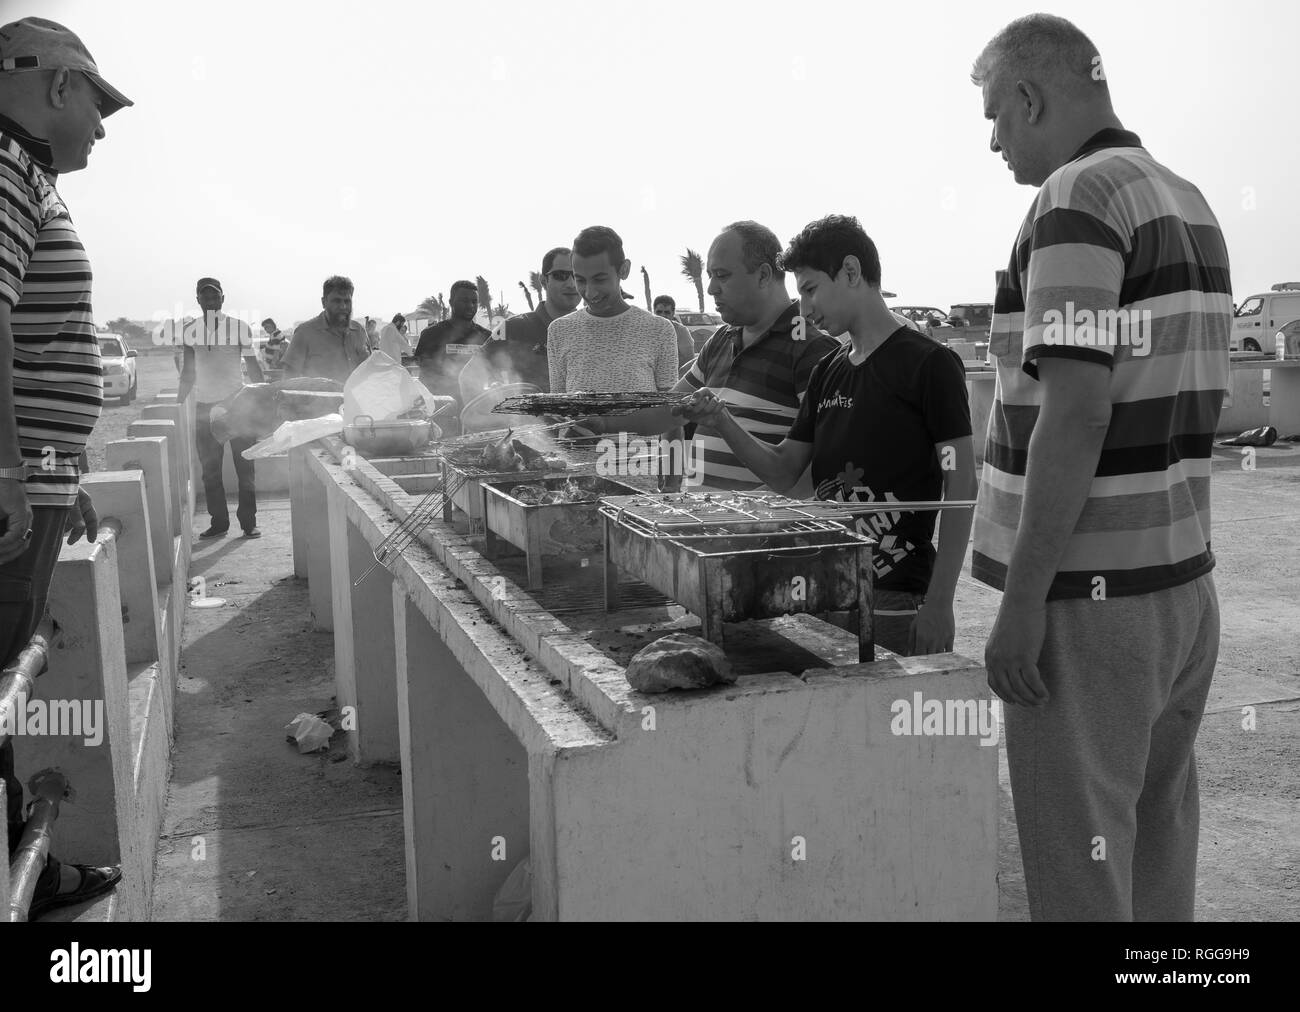 Groupe d'hommes en arabe la cuisson en plein air (barbecue) Banque D'Images